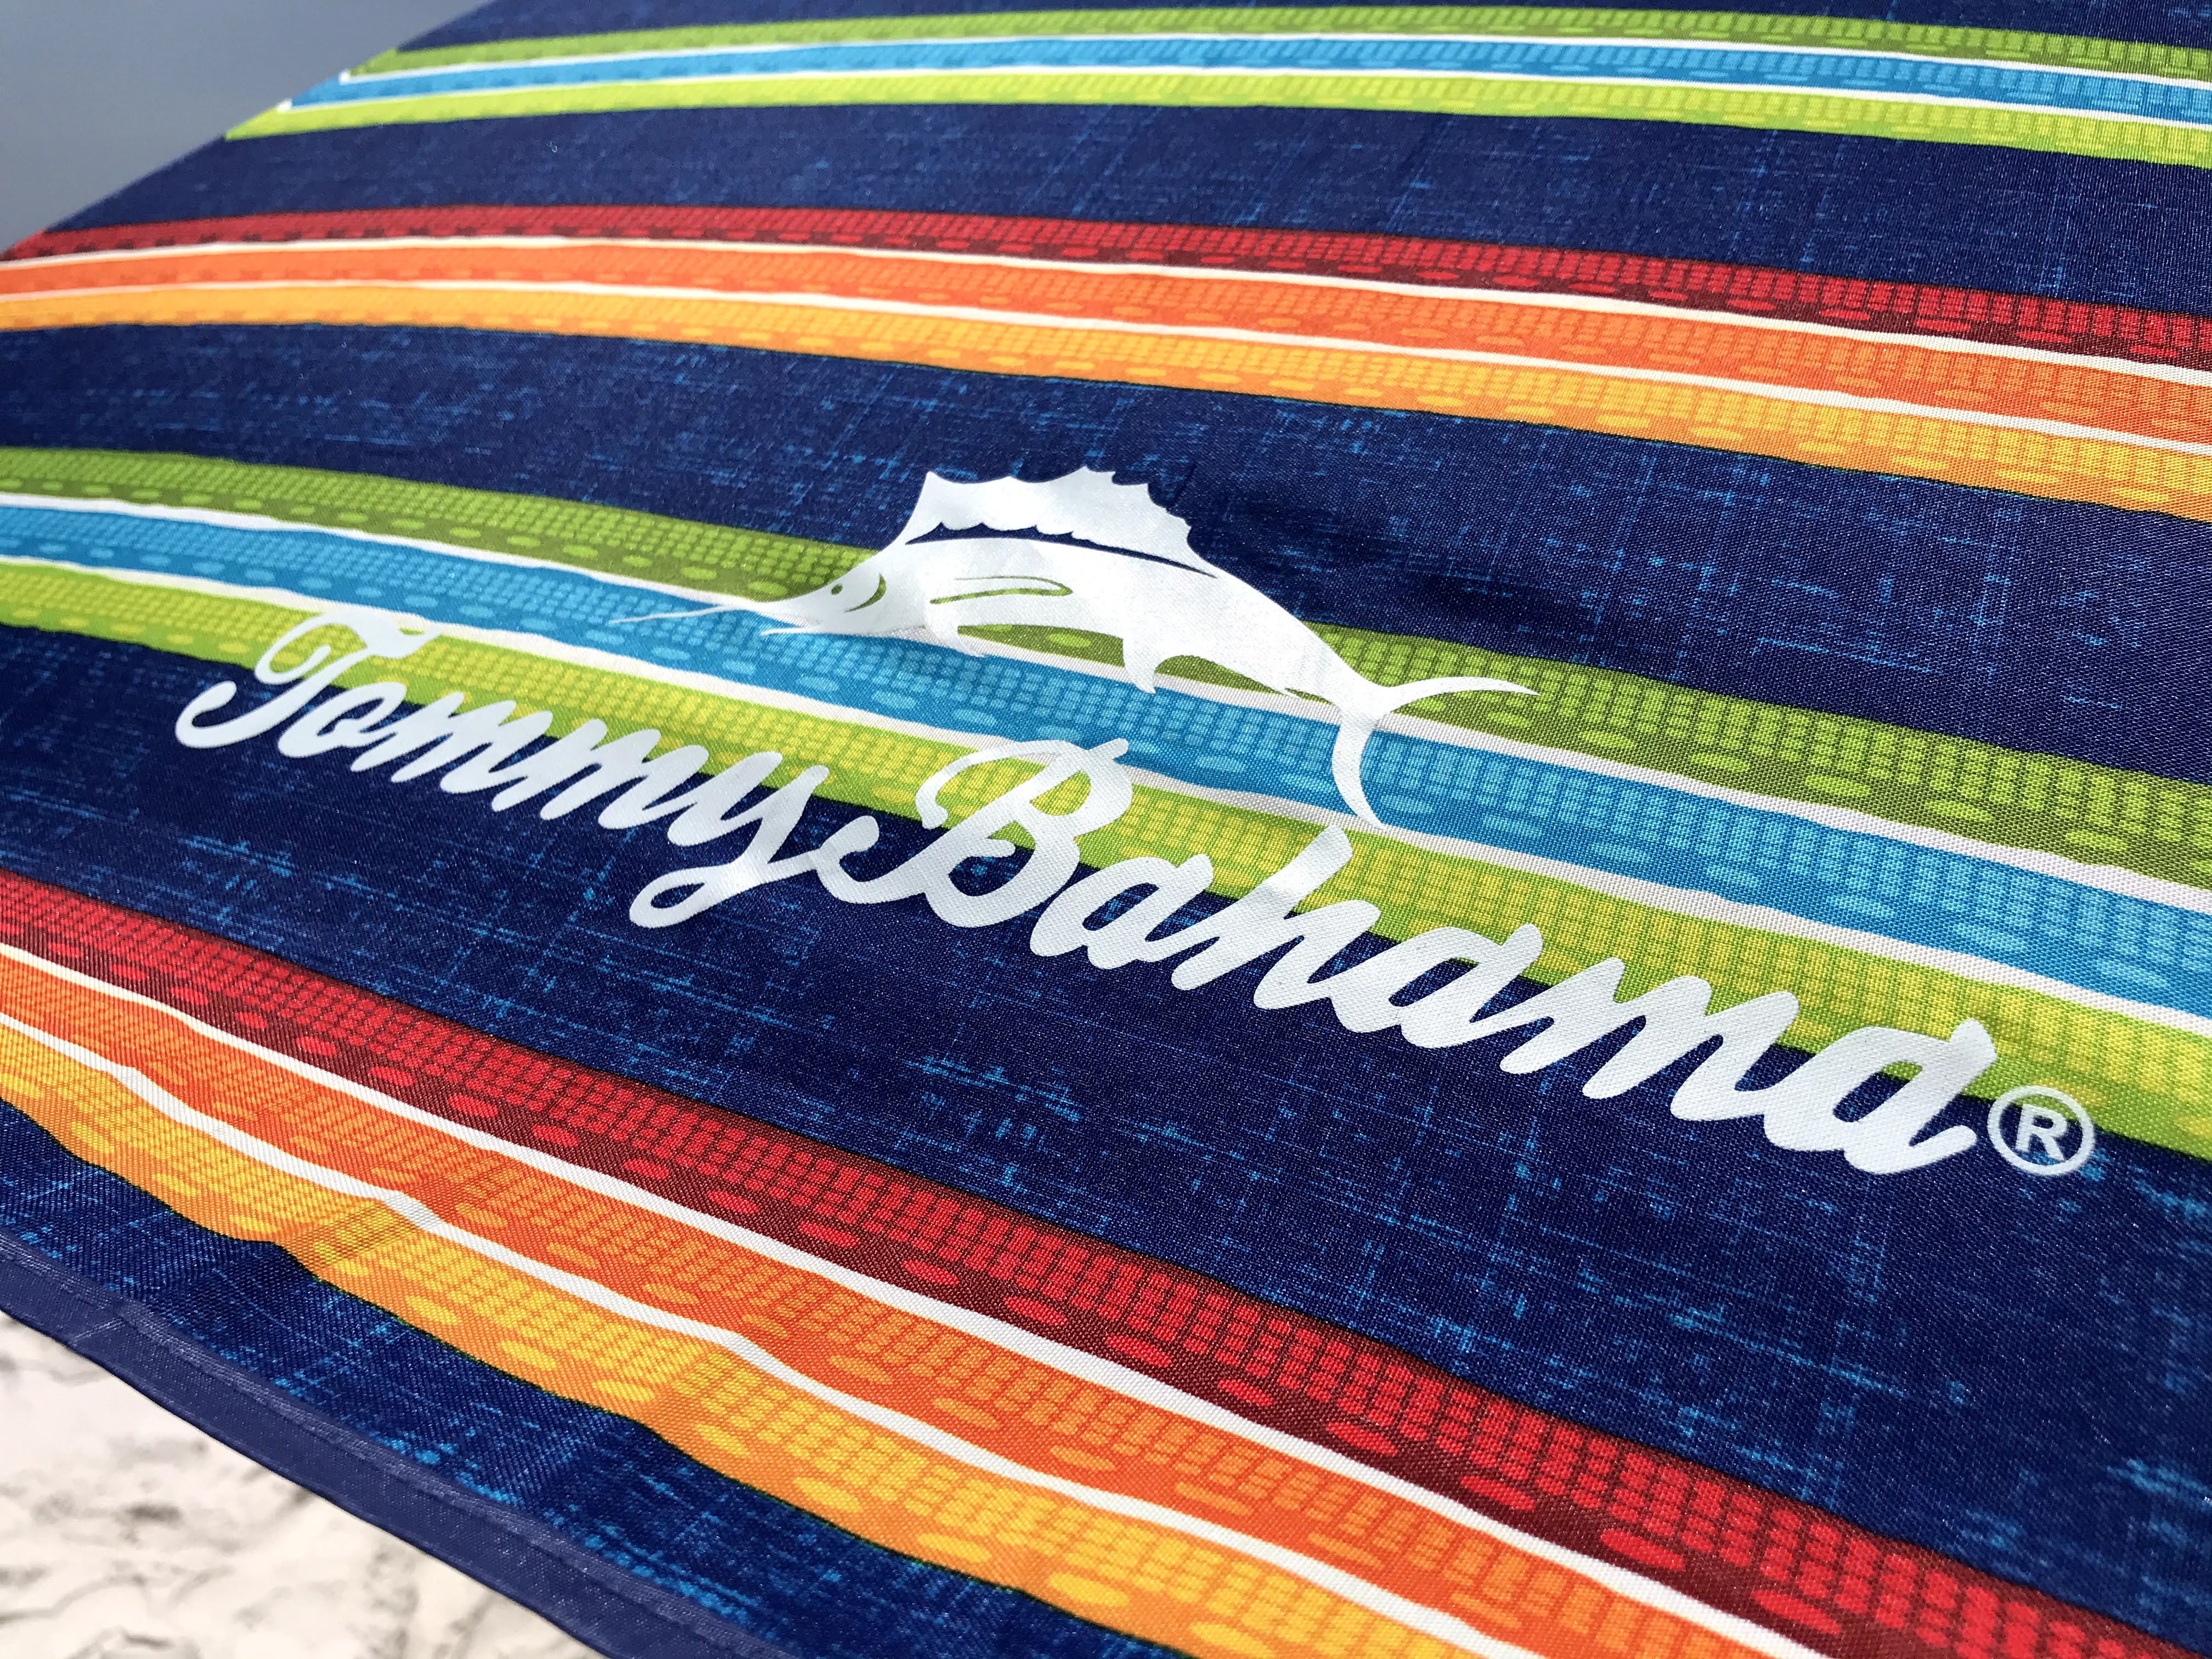 Tommy Bahama beach umbrella